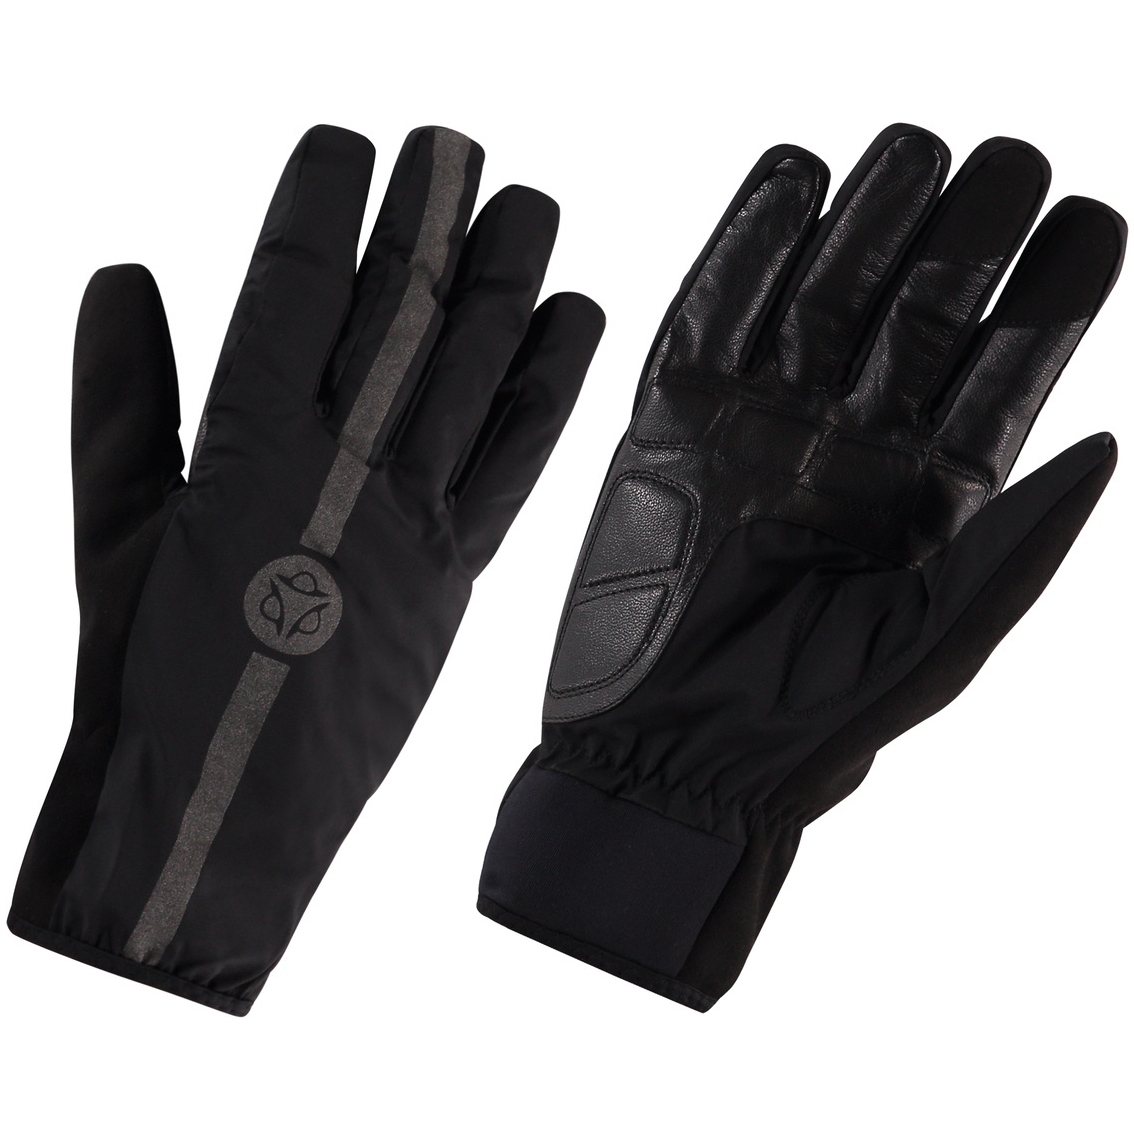 Bild von AGU Commuter Winter Regen-Handschuhe - schwarz